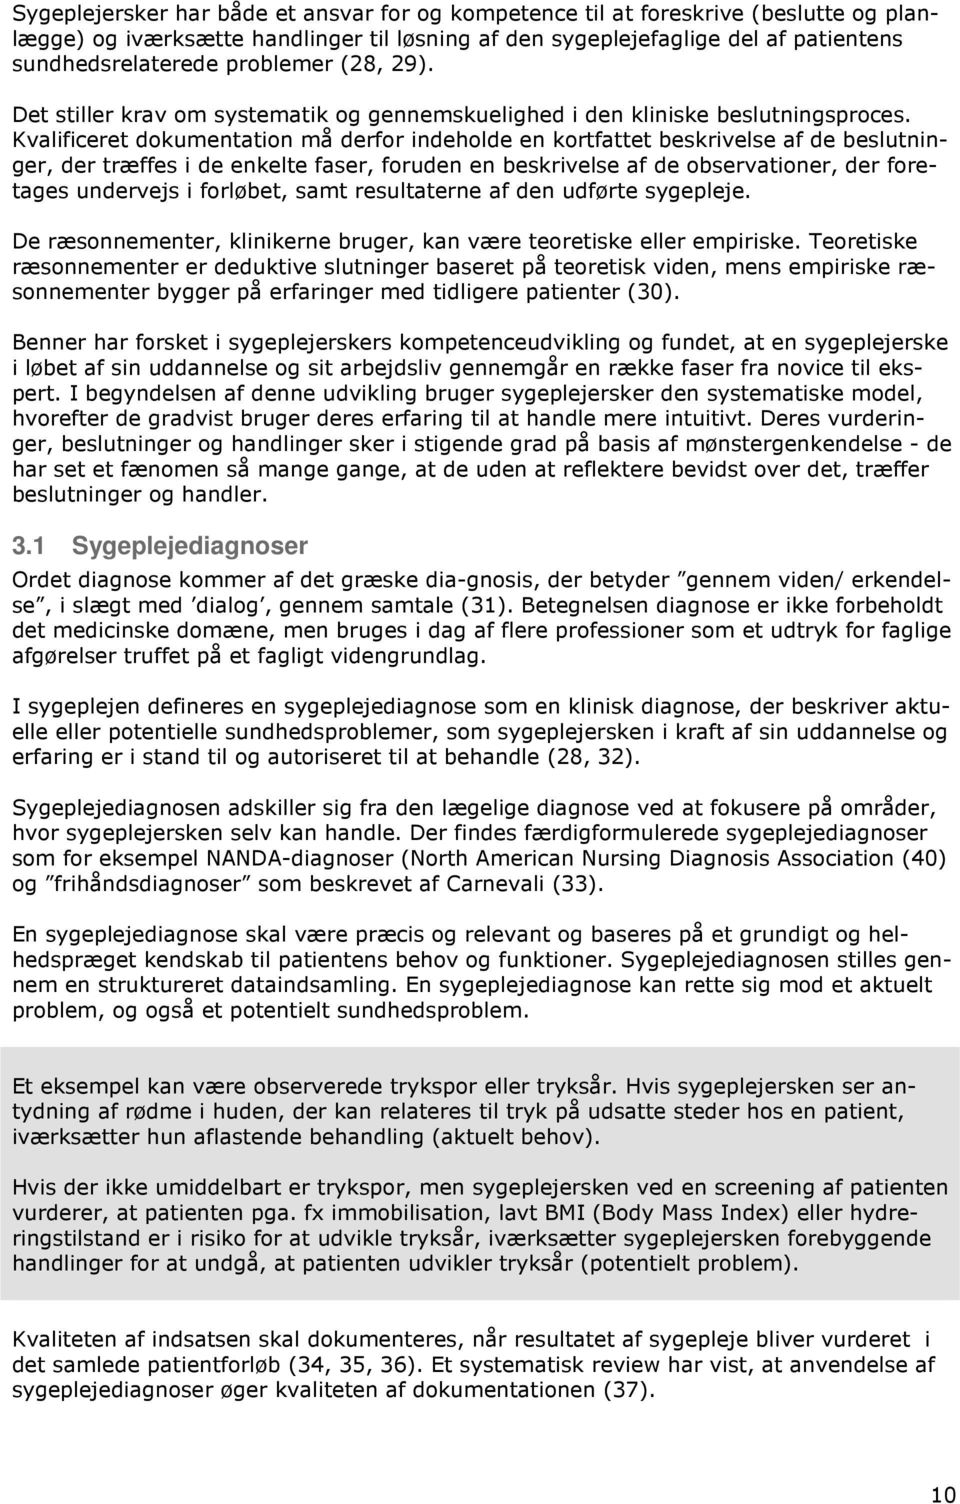 DOKUMENTATION AF SYGEPLEJE - KONSENSUSRAPPORT - PDF Free Download